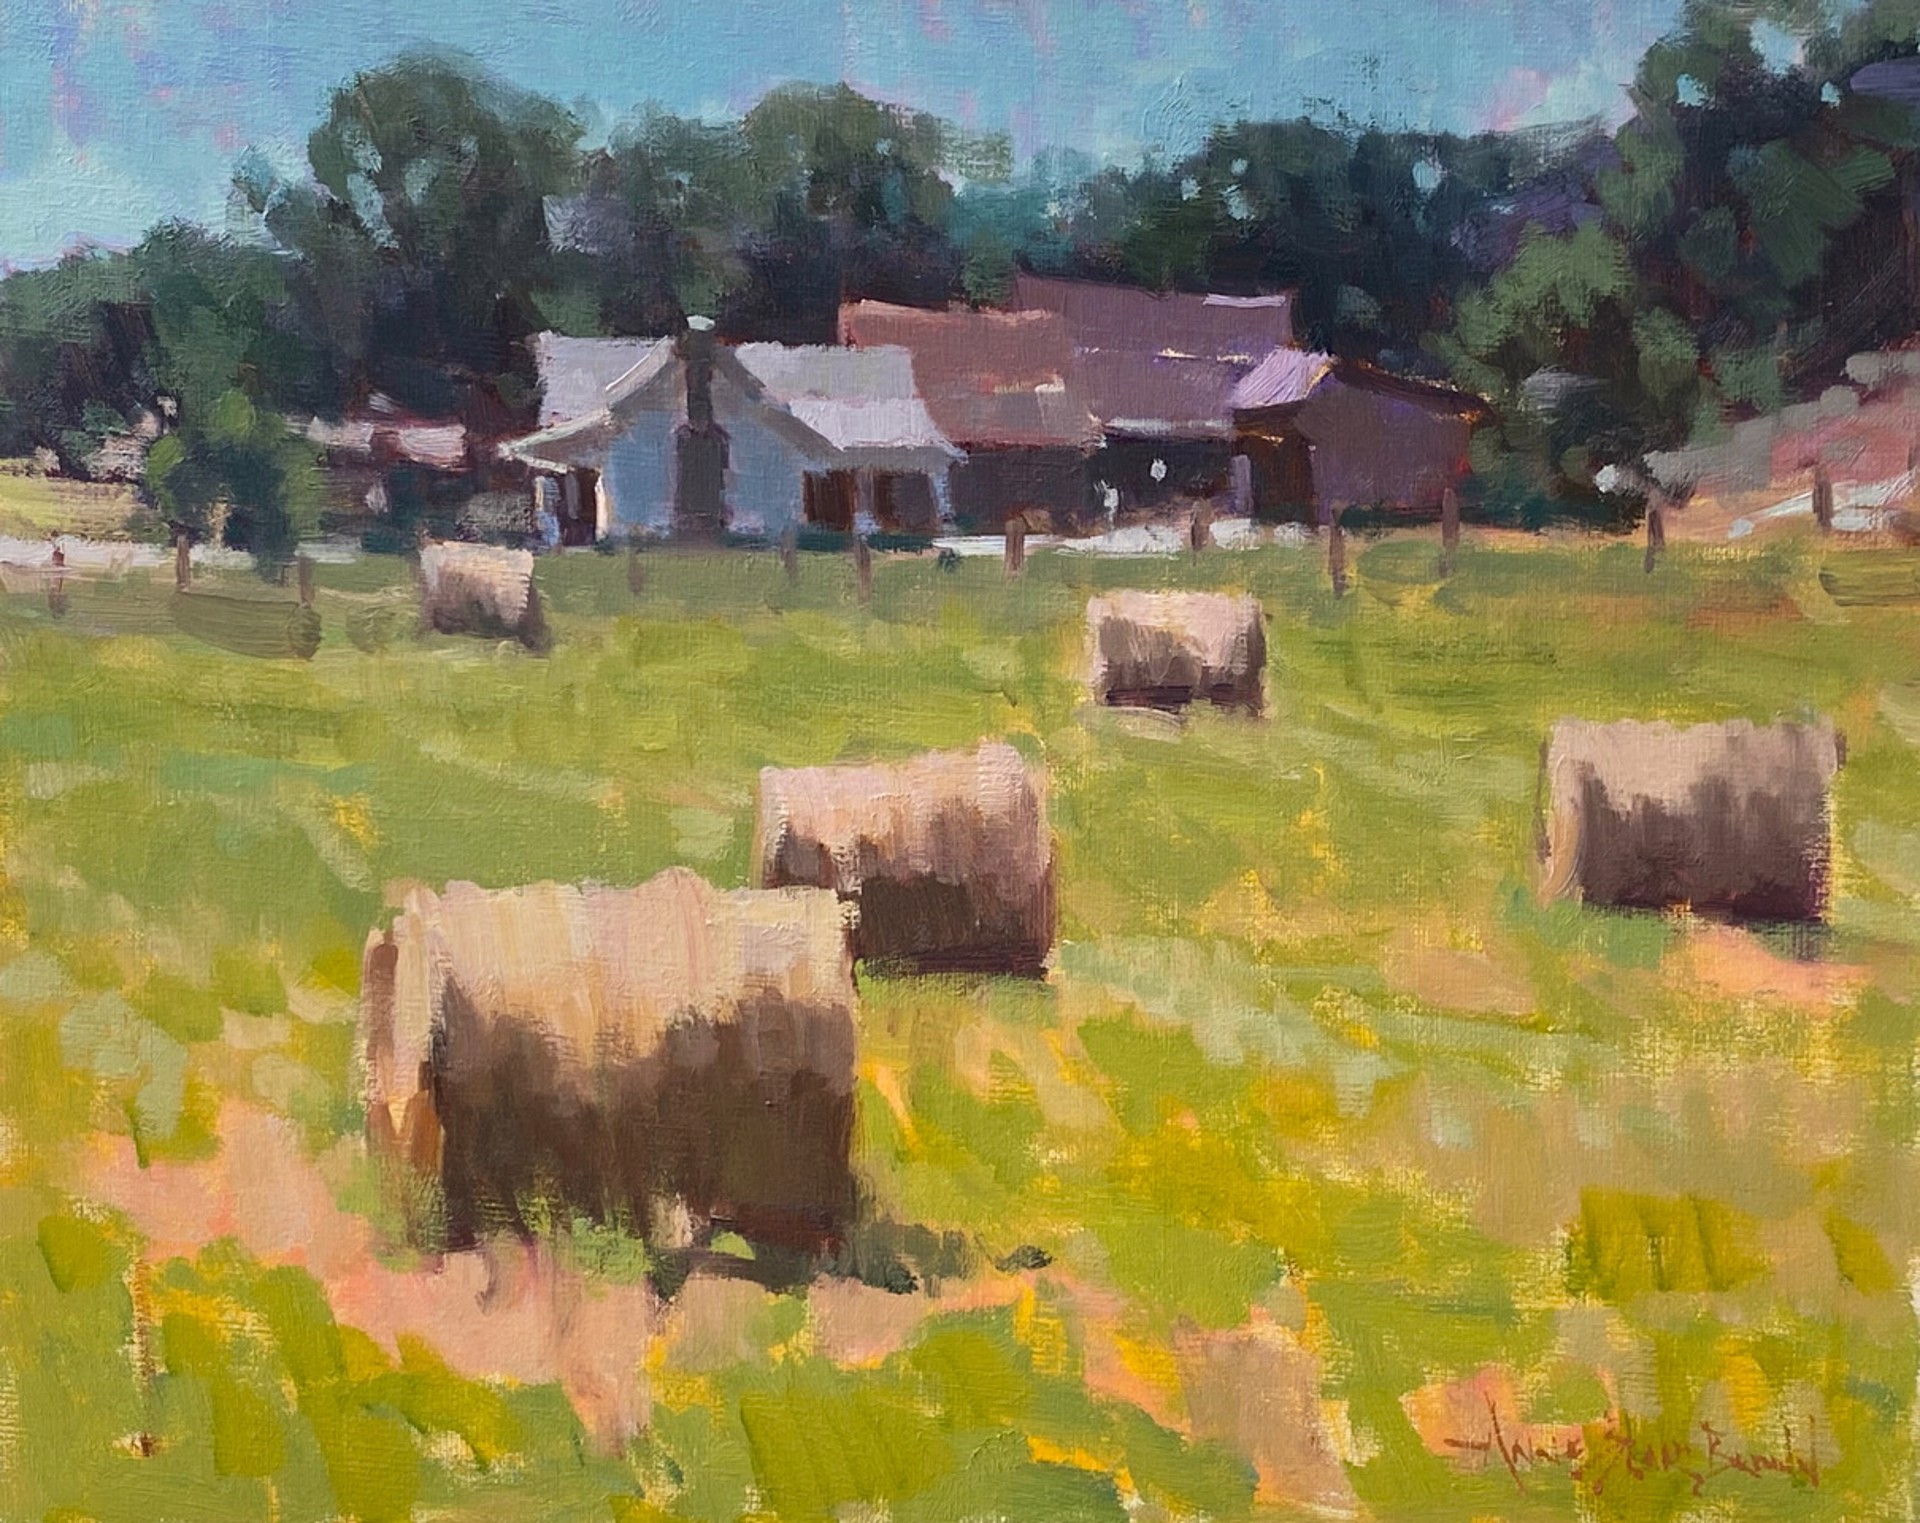 Down On The Farm by Anne Blair Brown, AISM